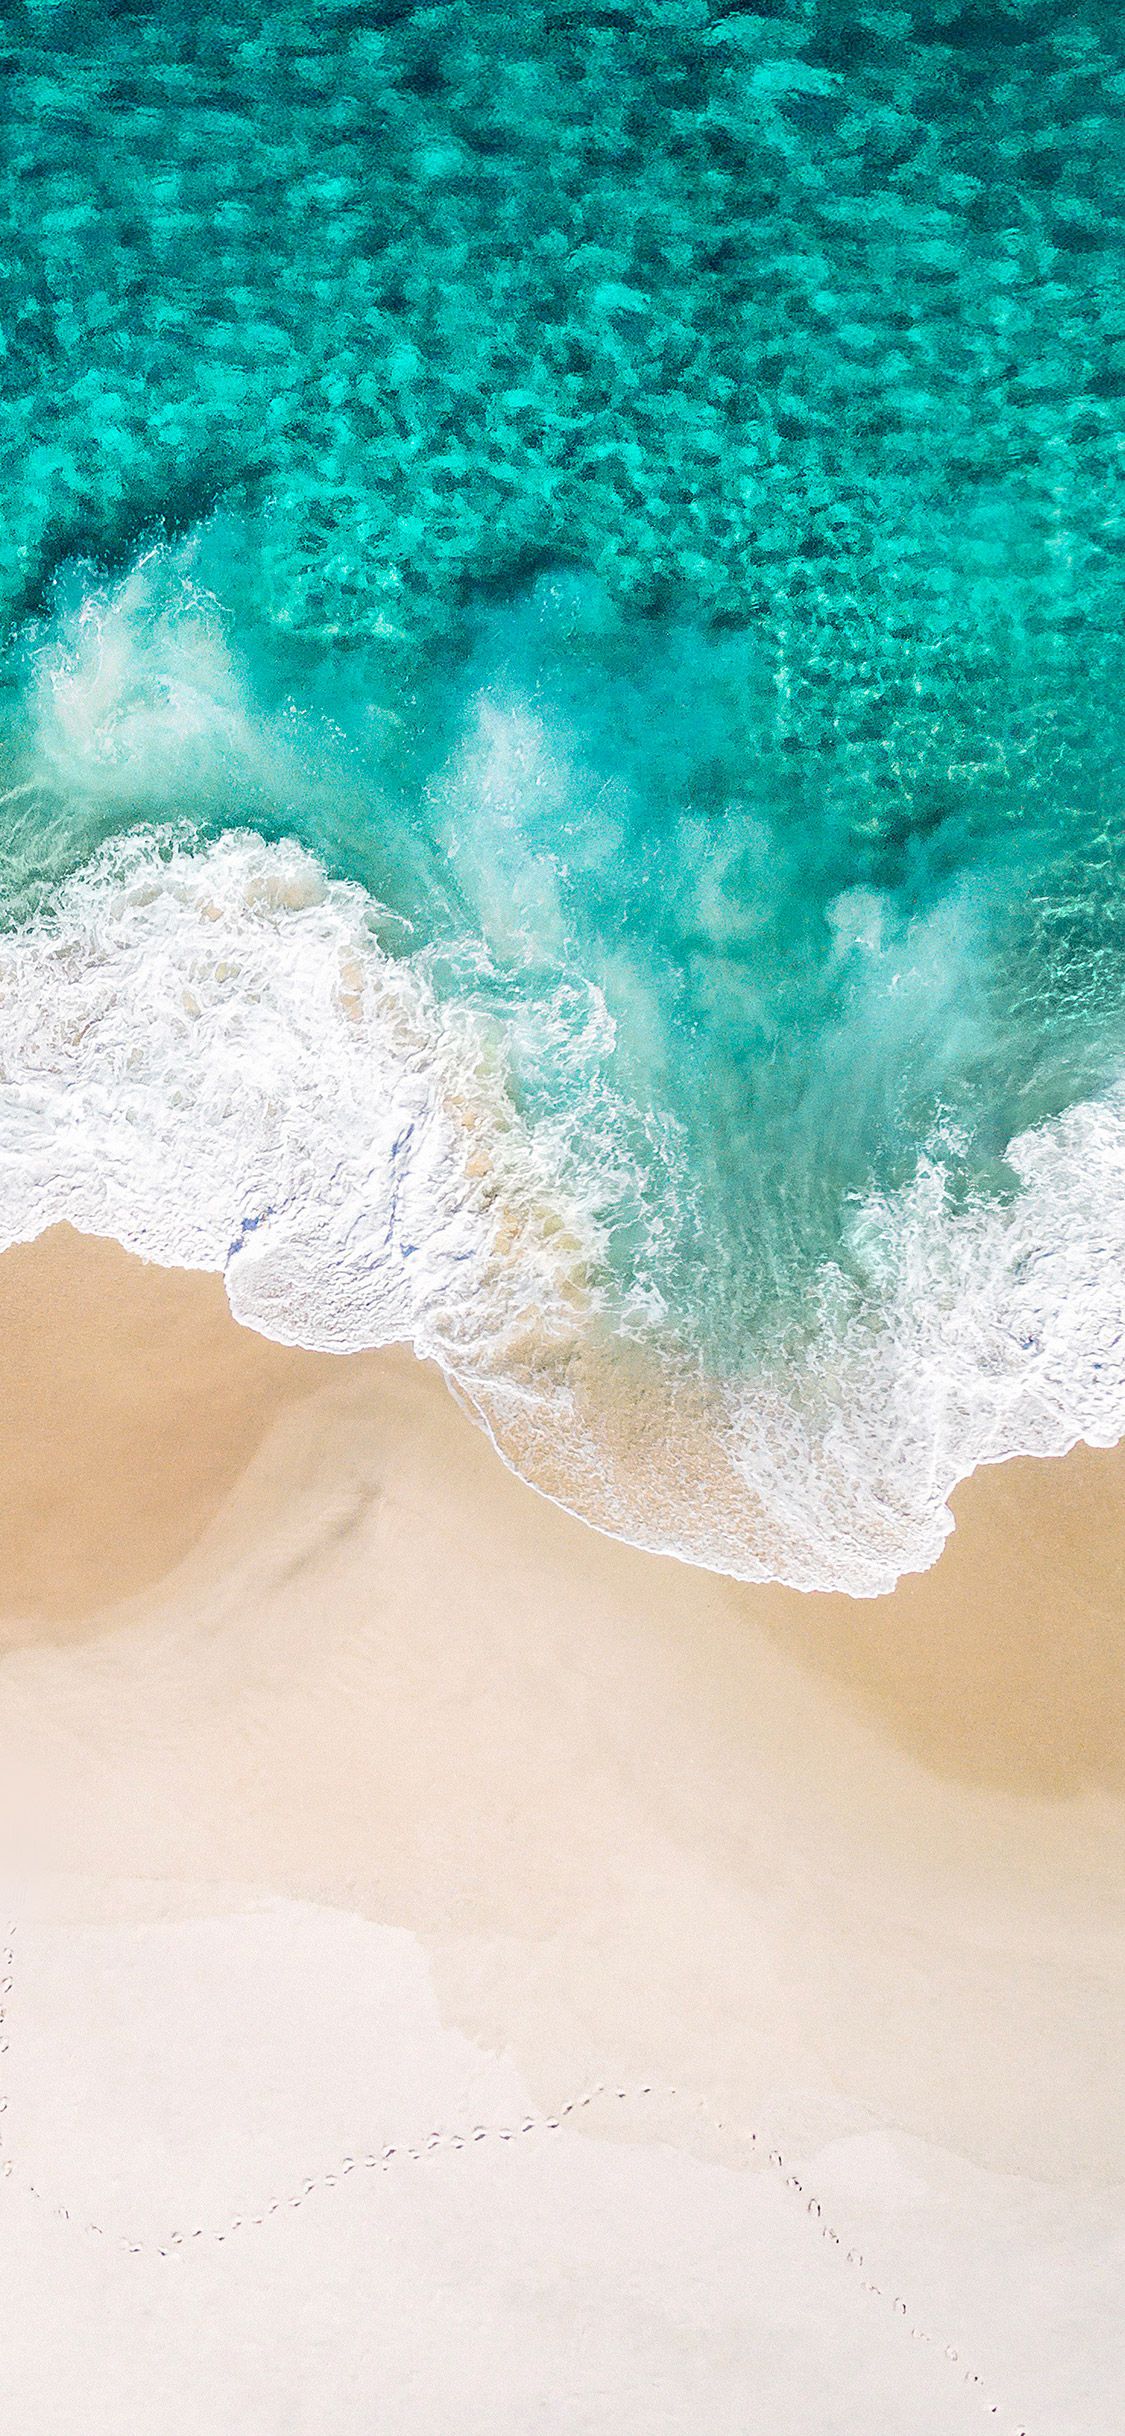 Hình nền sóng biển sẽ giúp bạn thư giãn và tìm lại sự cân bằng trong cuộc sống. Hãy để những hình ảnh sóng biển đưa bạn tới những bãi biển đẹp và thanh bình nhất.